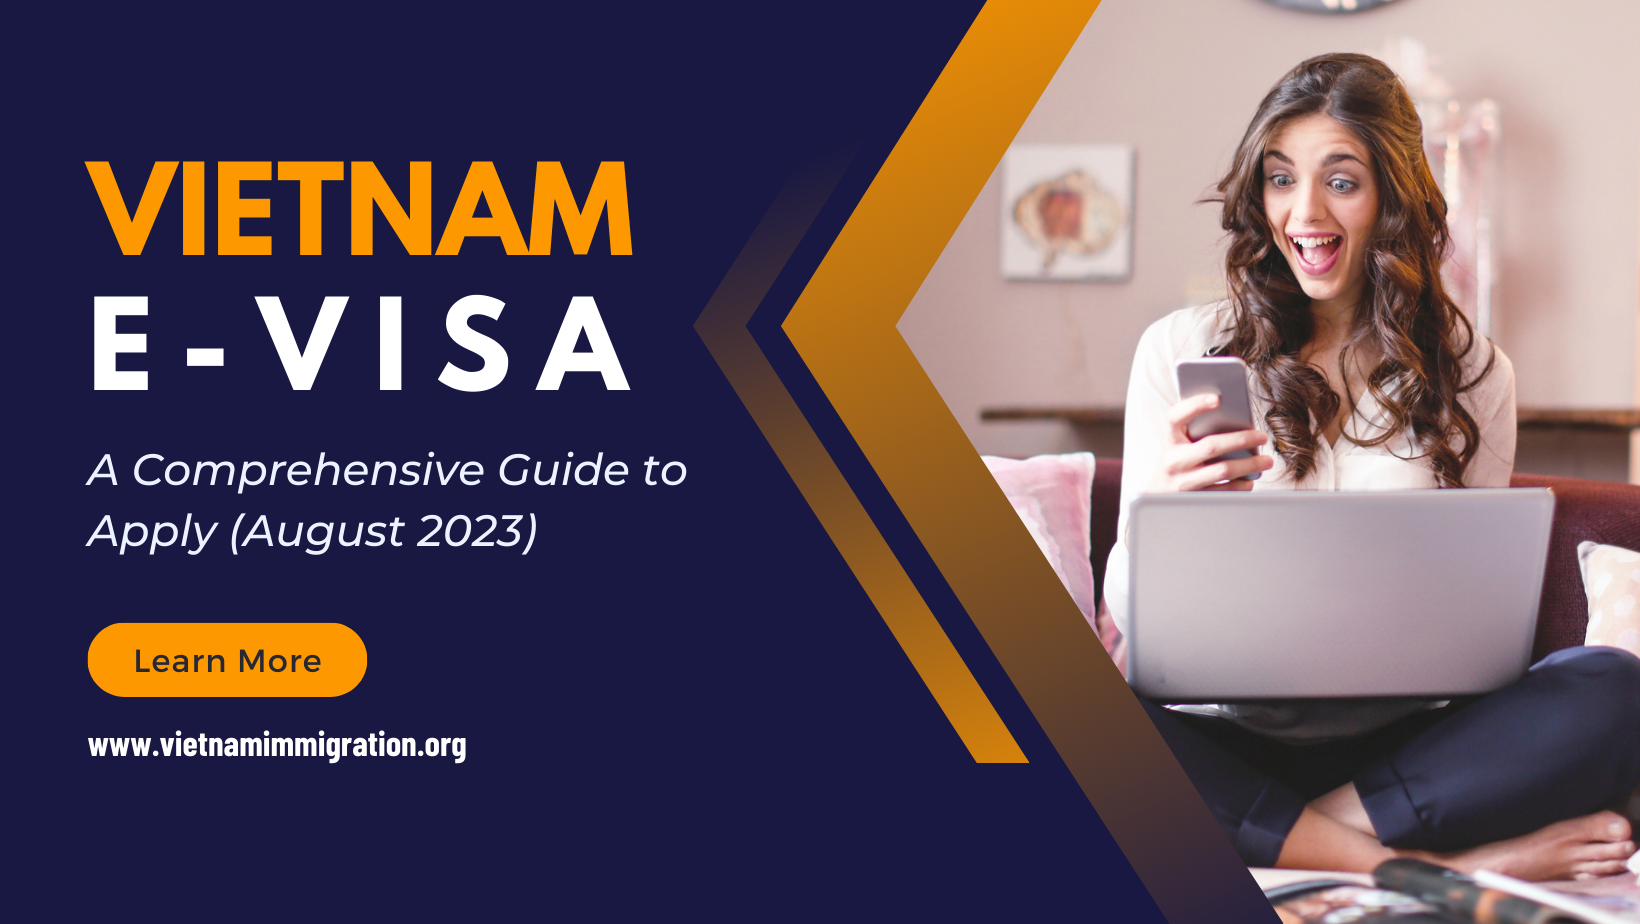 Vietnam E-Visa: A Comprehensive Guide to Apply (August 2023)